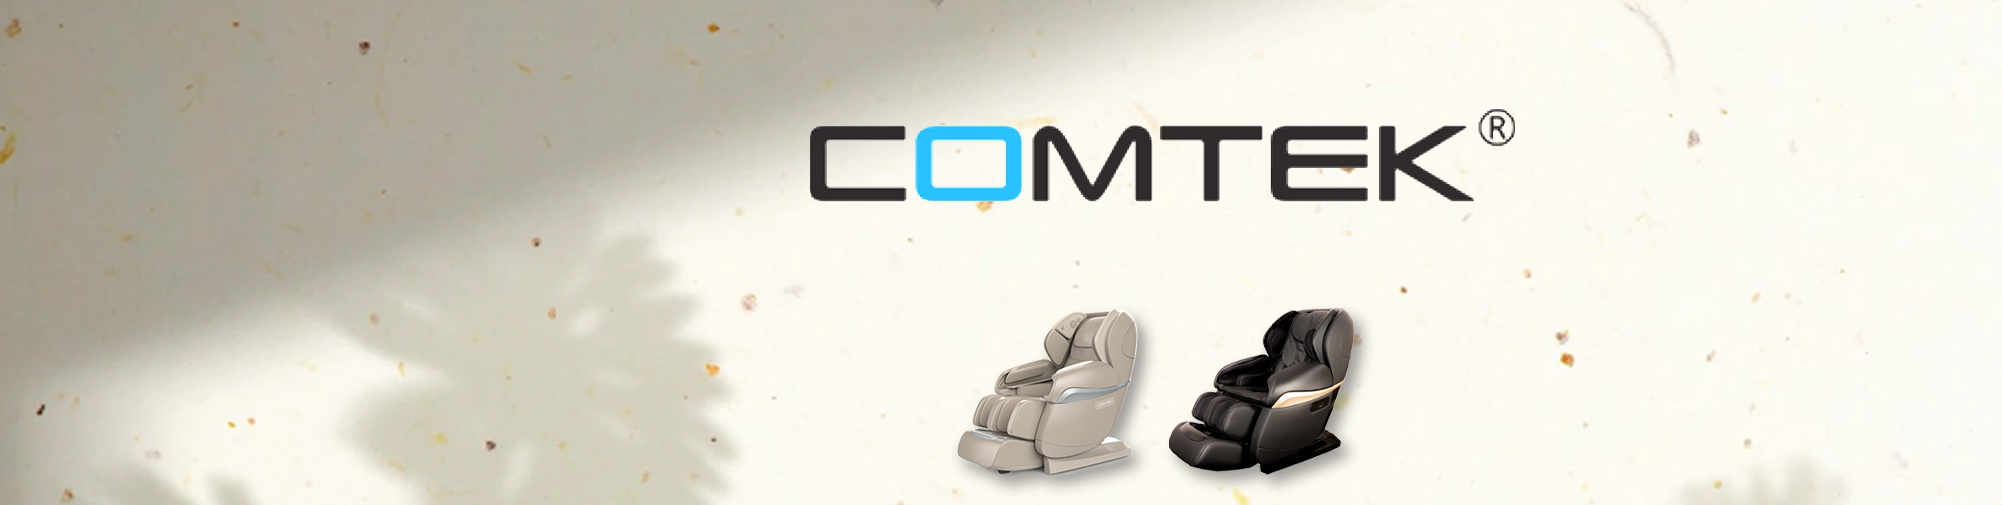 COMTEK - producteur originel professionnel | monde des fauteuils de massage